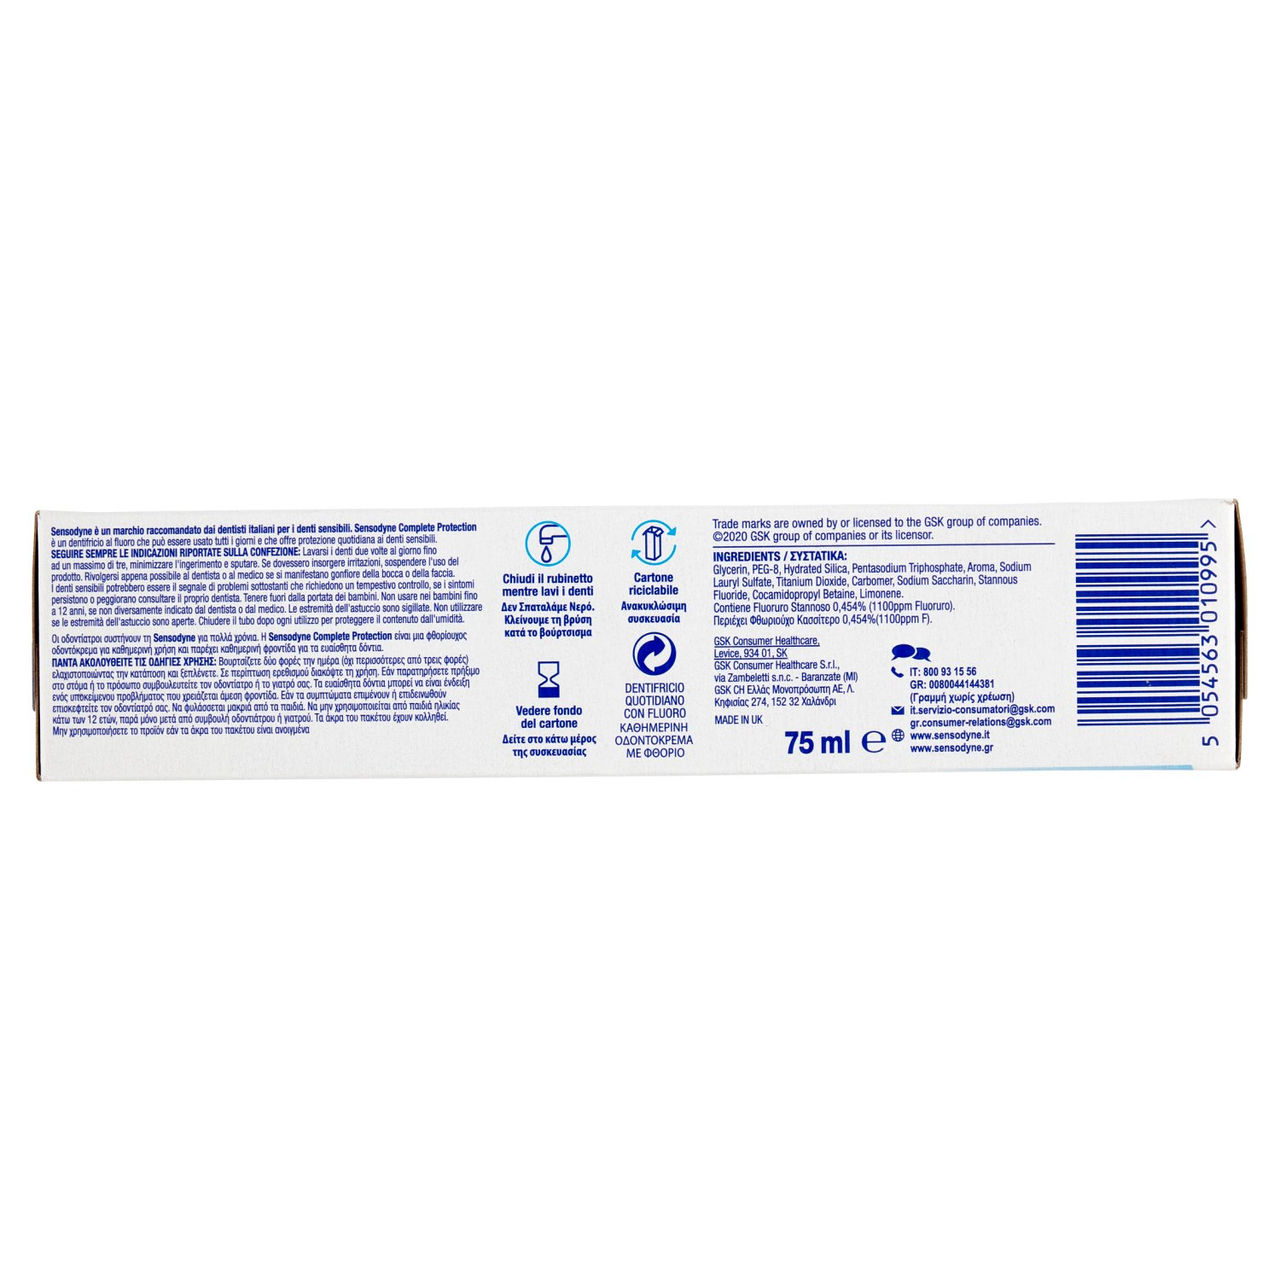 Sensodyne Complete Protection dentifricio quotidiano con fluoro 75 ml